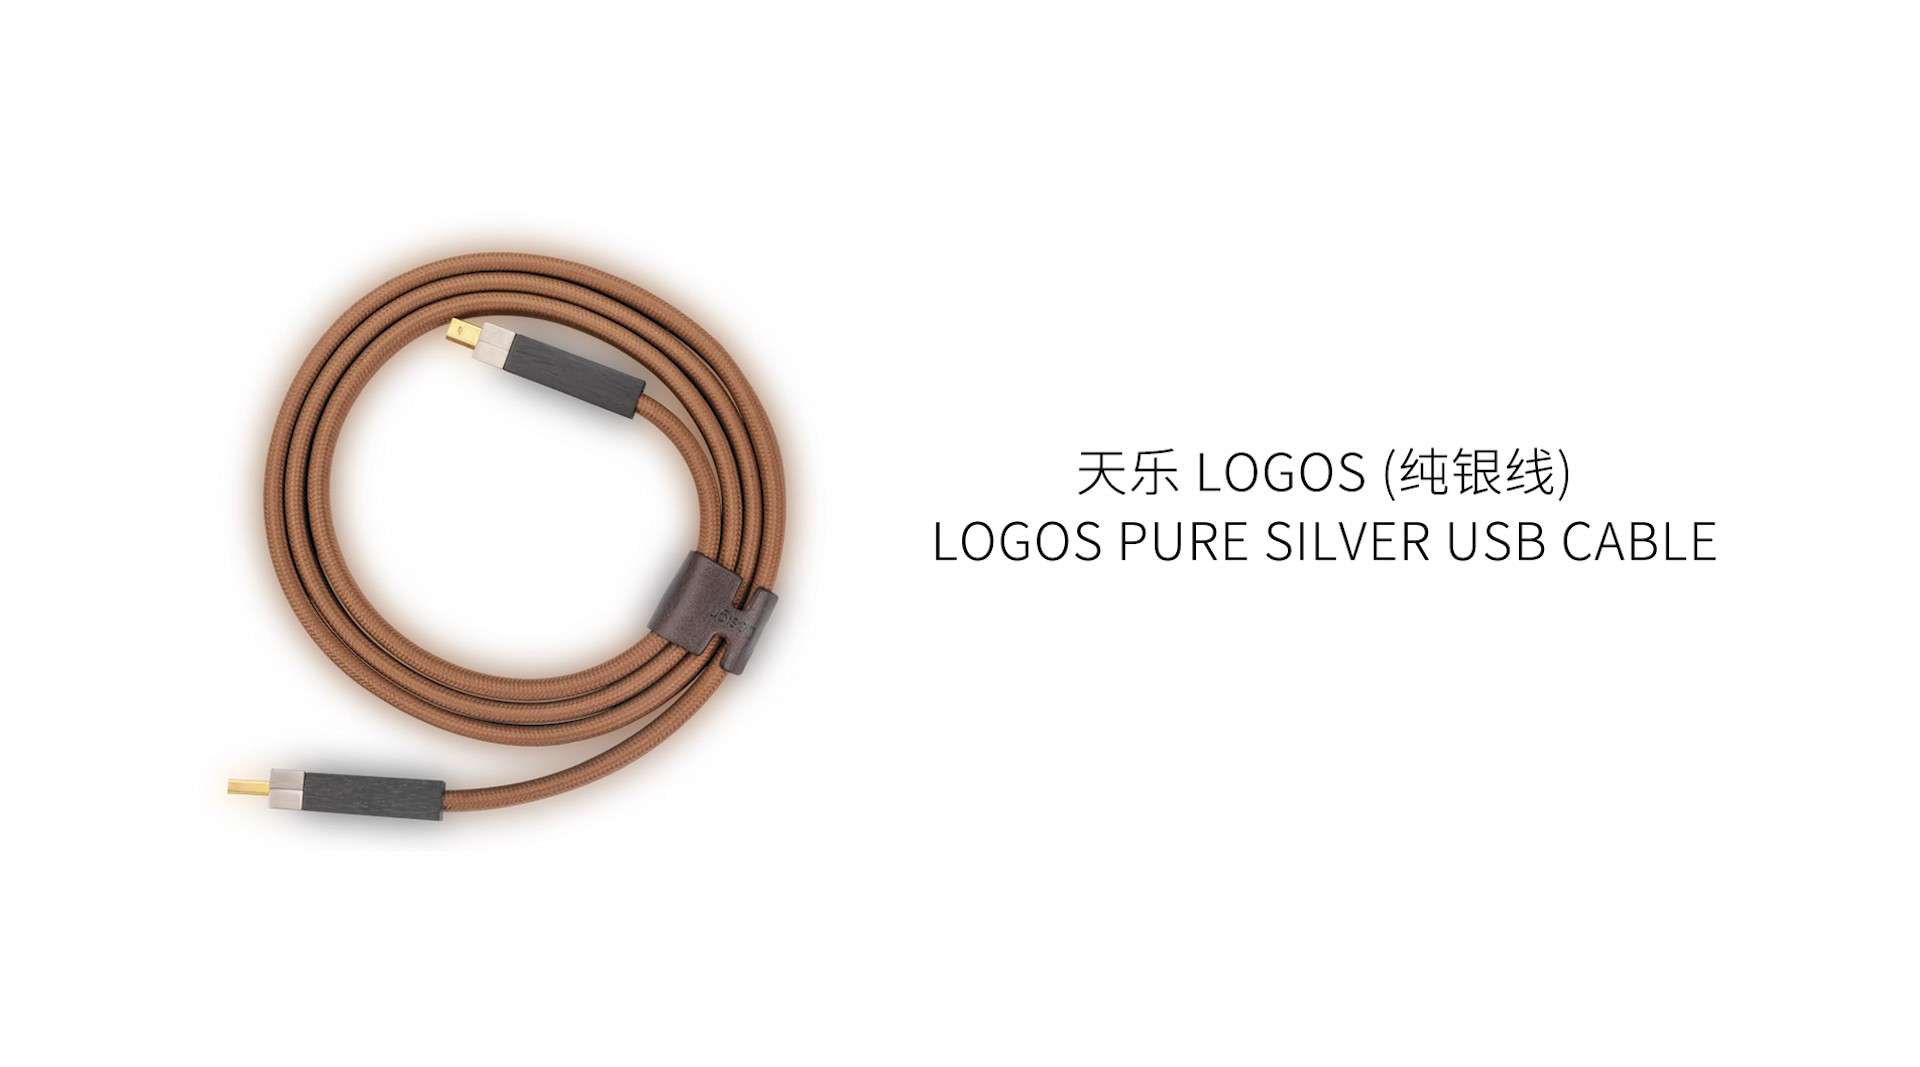 天乐 LOGOS PURE SILVER USB CABLE 纯银数据线 - 电商短片